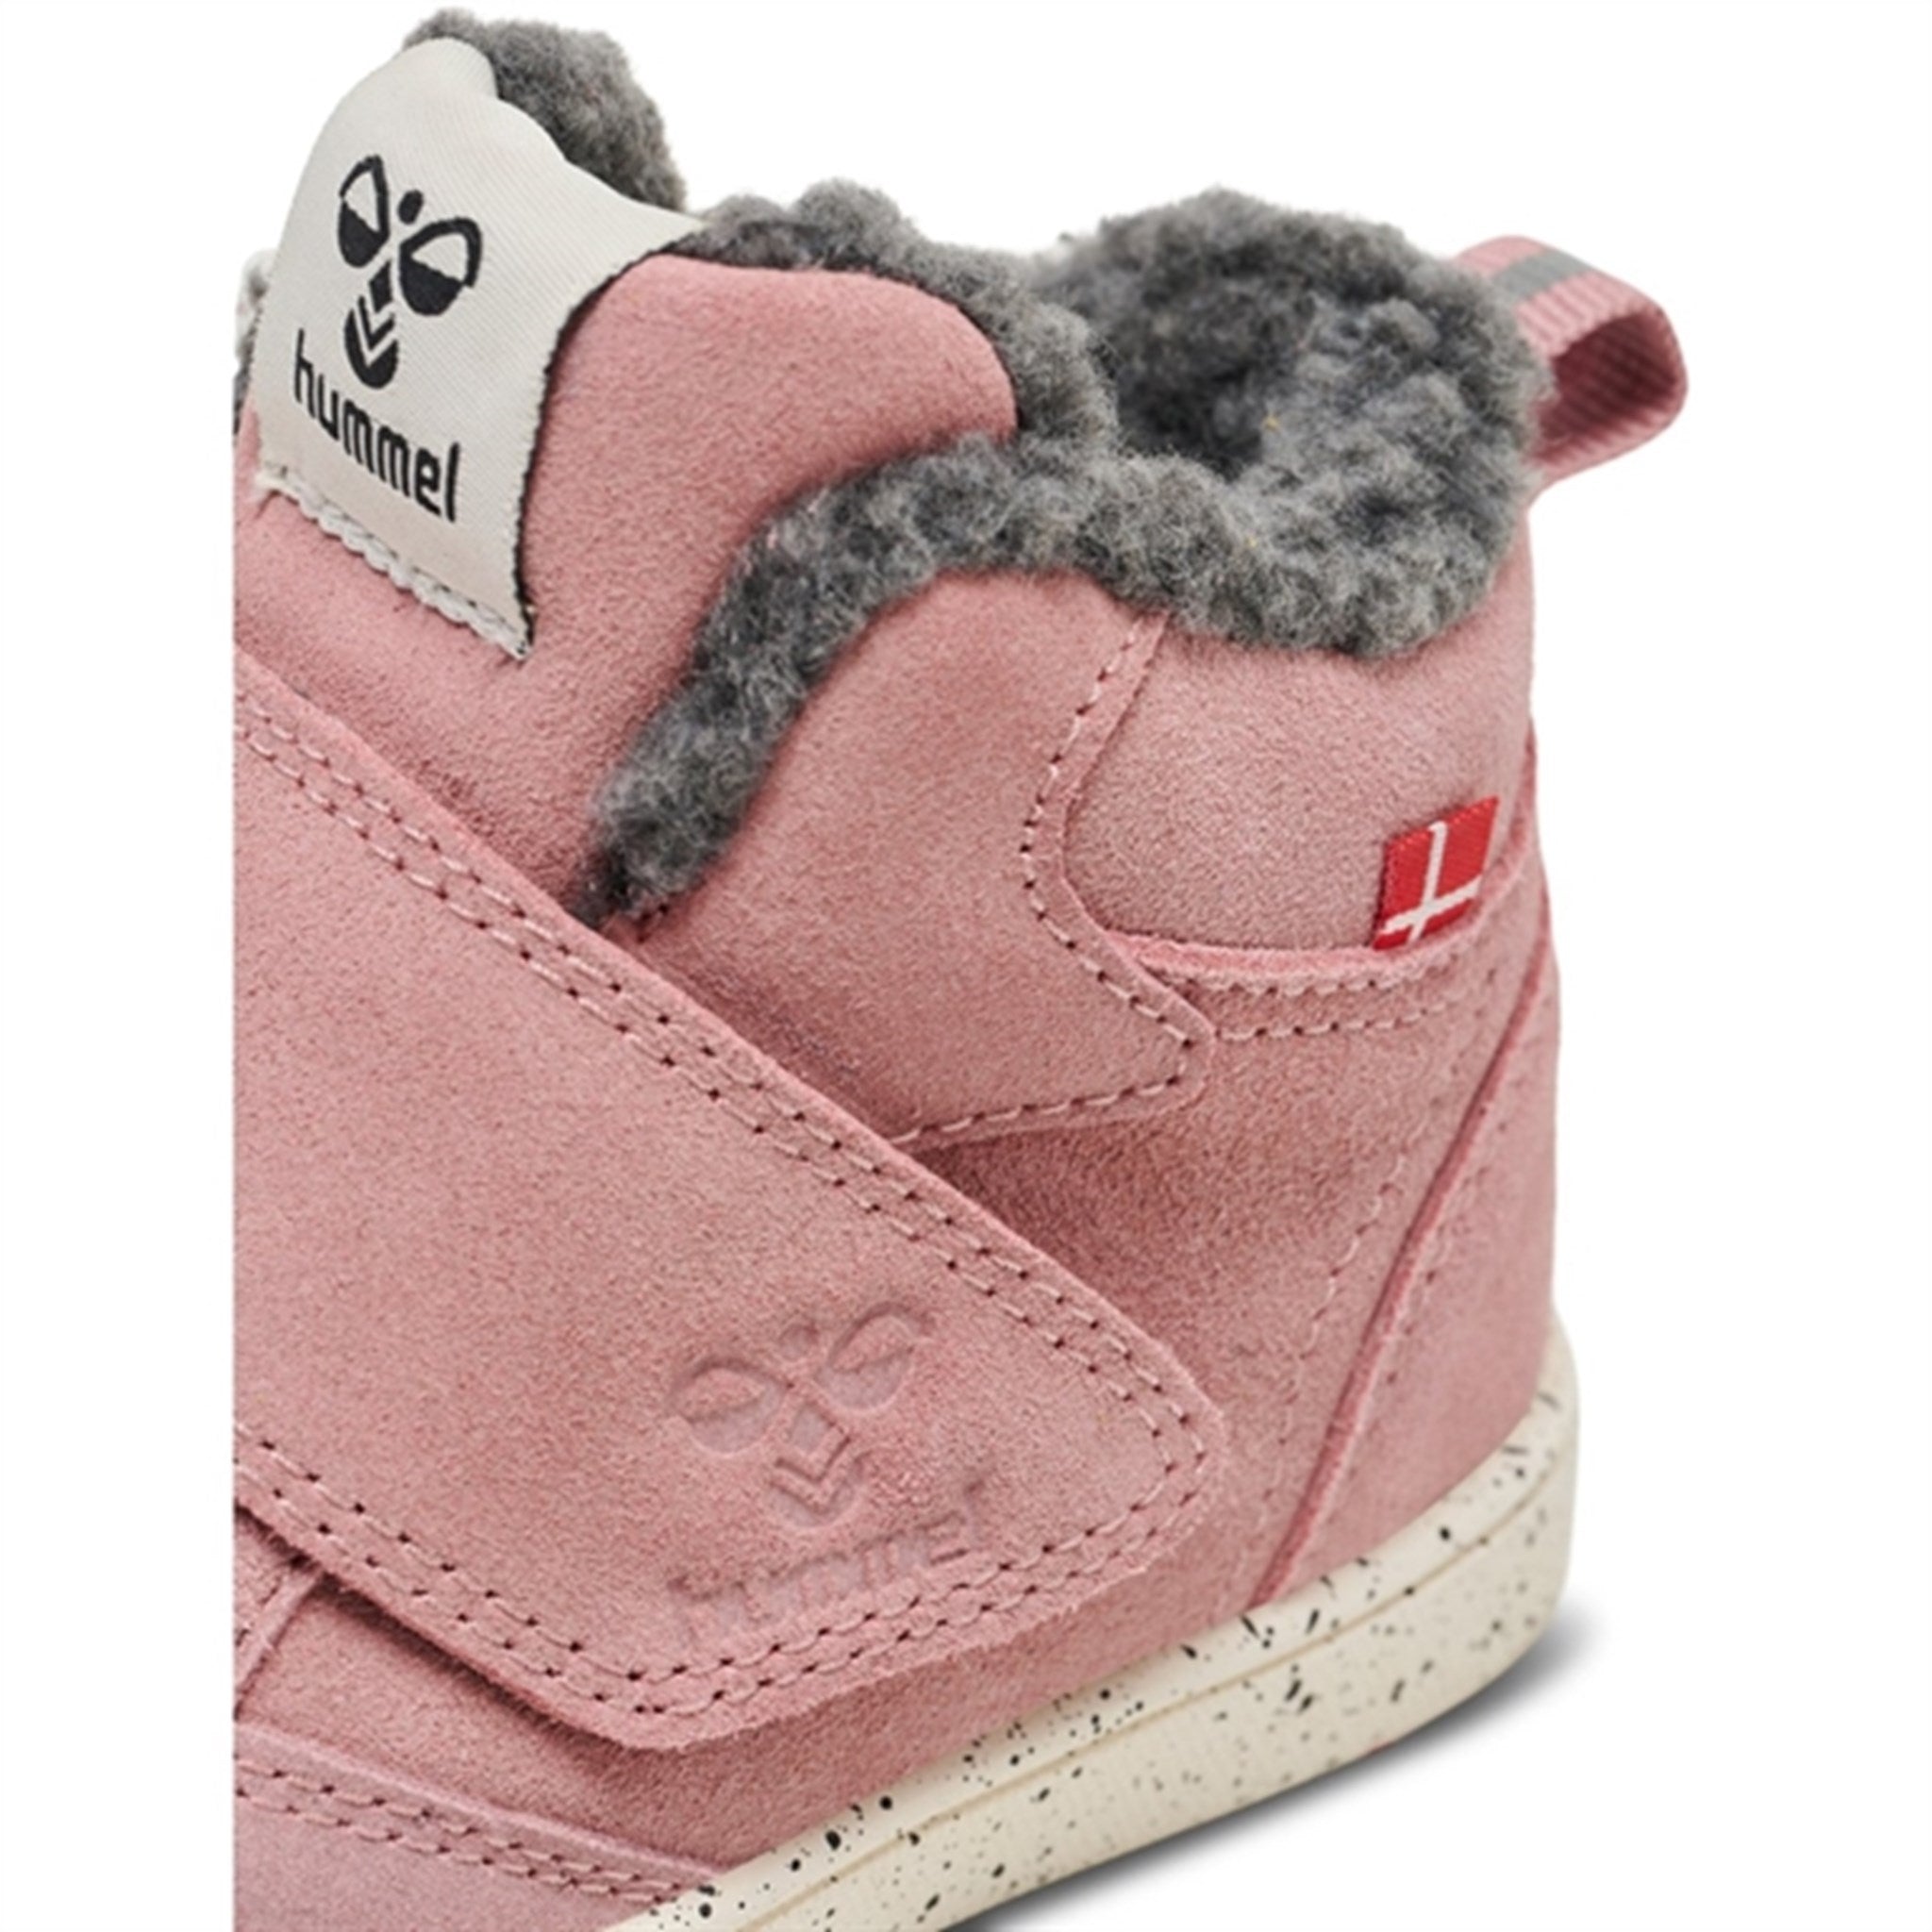 Hummel Stadil Infant Winter Boots Nostalgia Rose 6